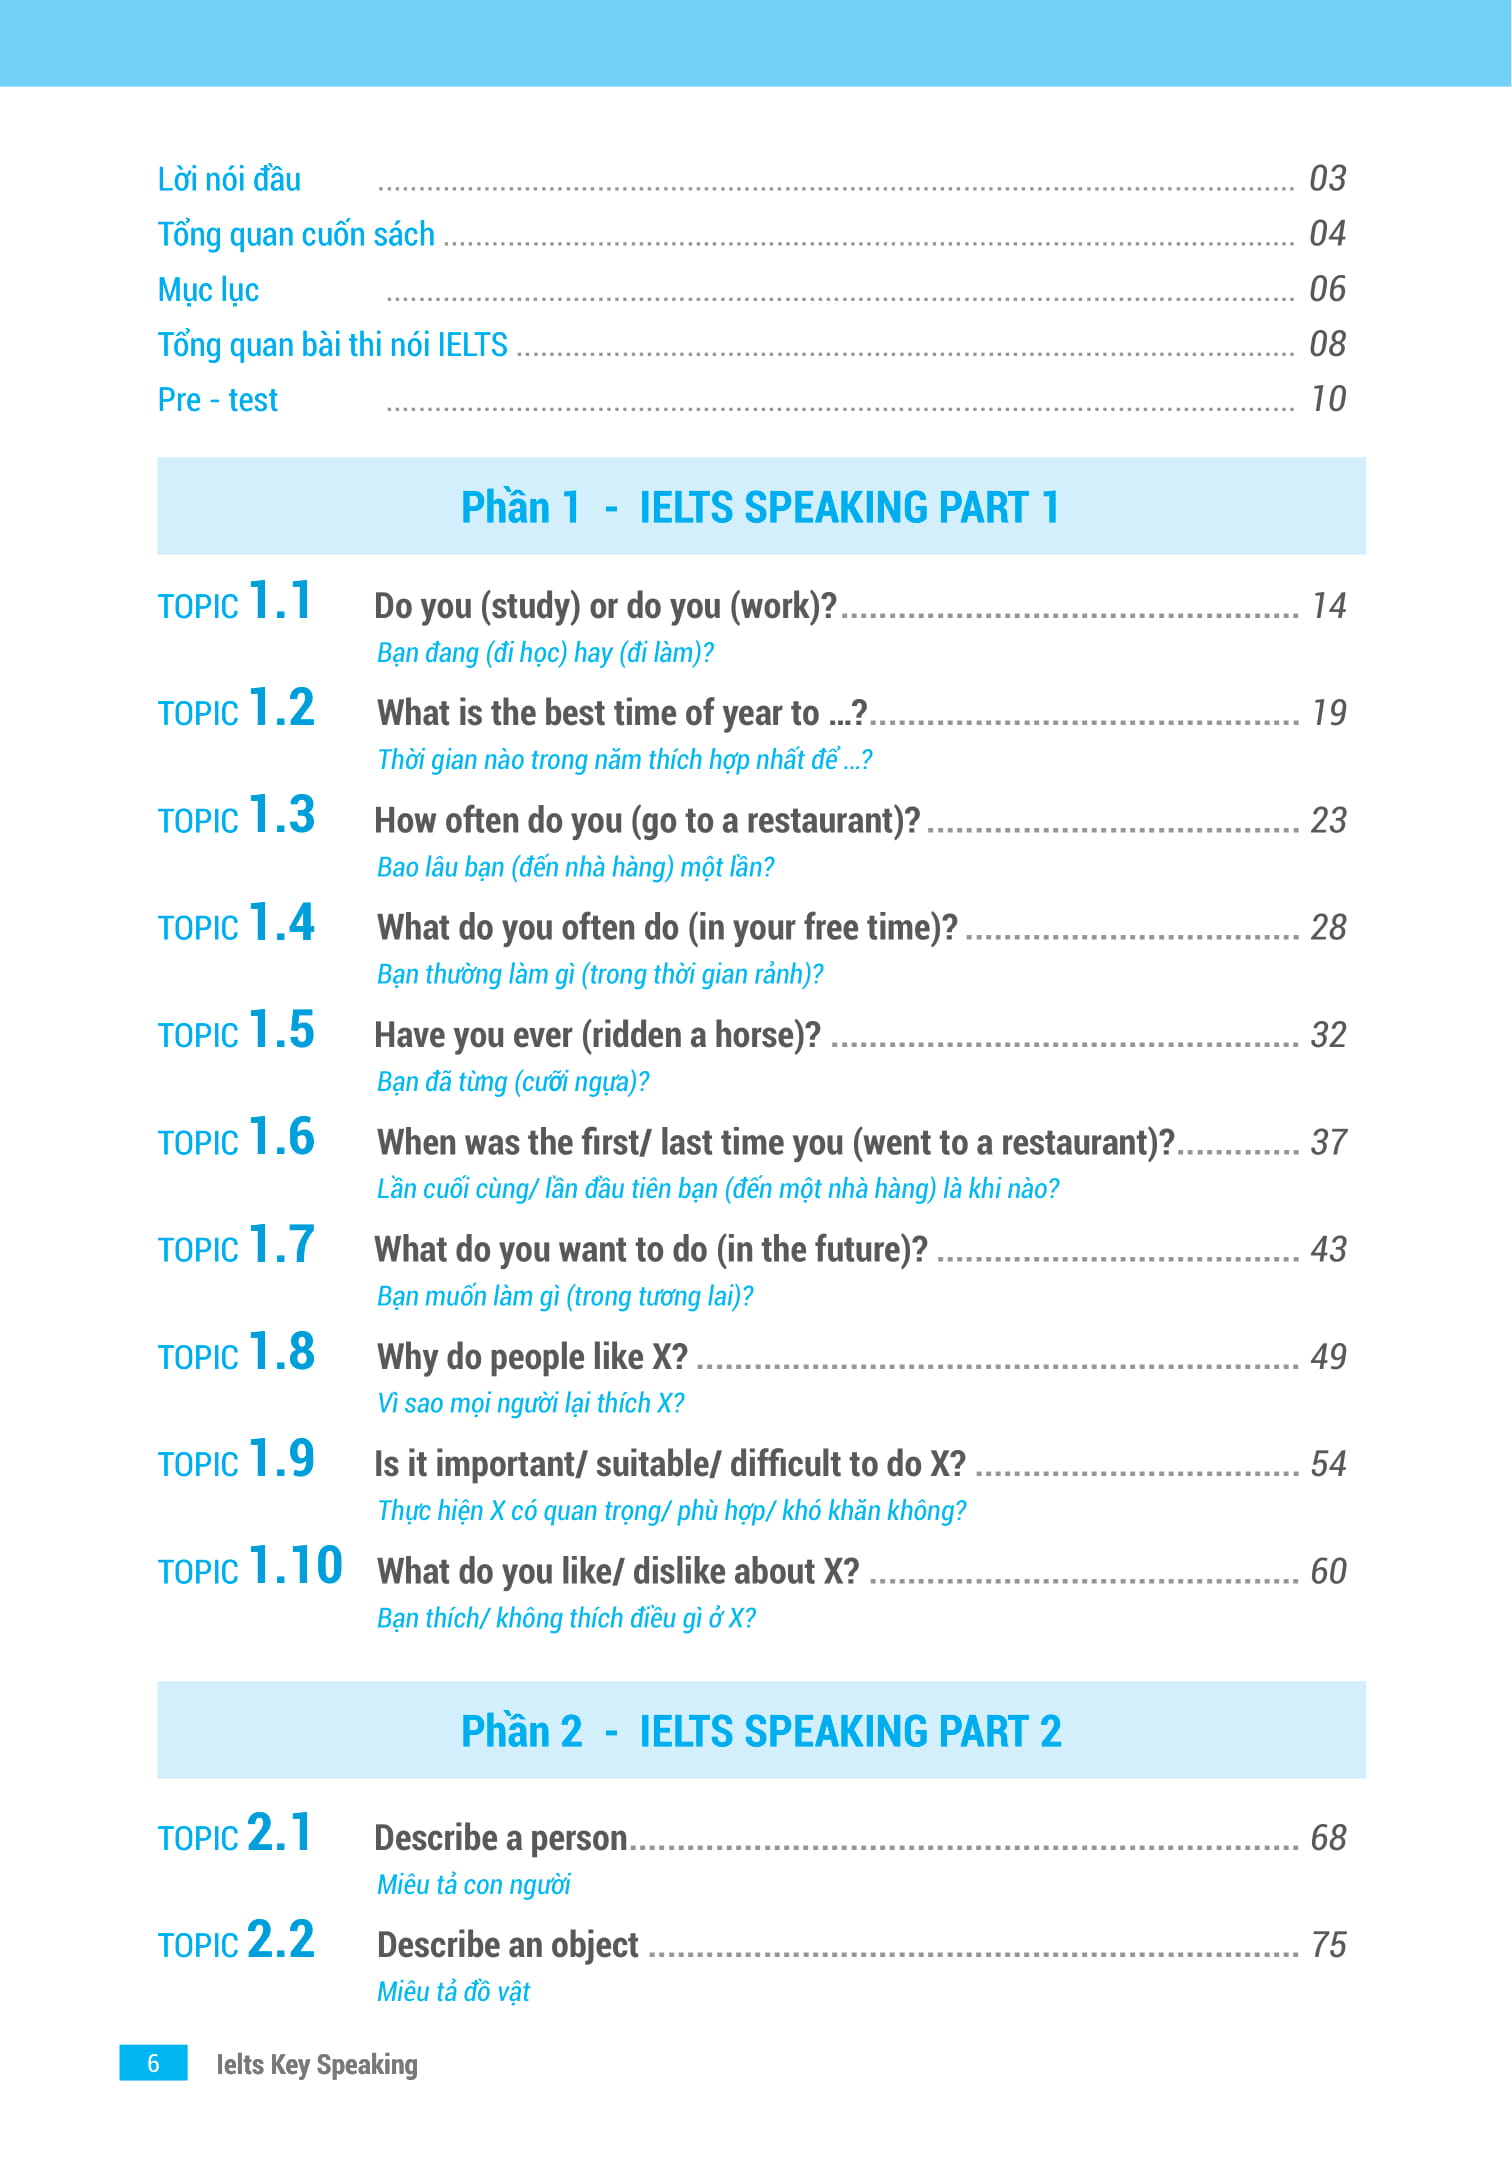 IELTS KEY SPEAKING - Công Thức Học Nhanh IELTS - Speaking Part 1, 2, 3 PDF